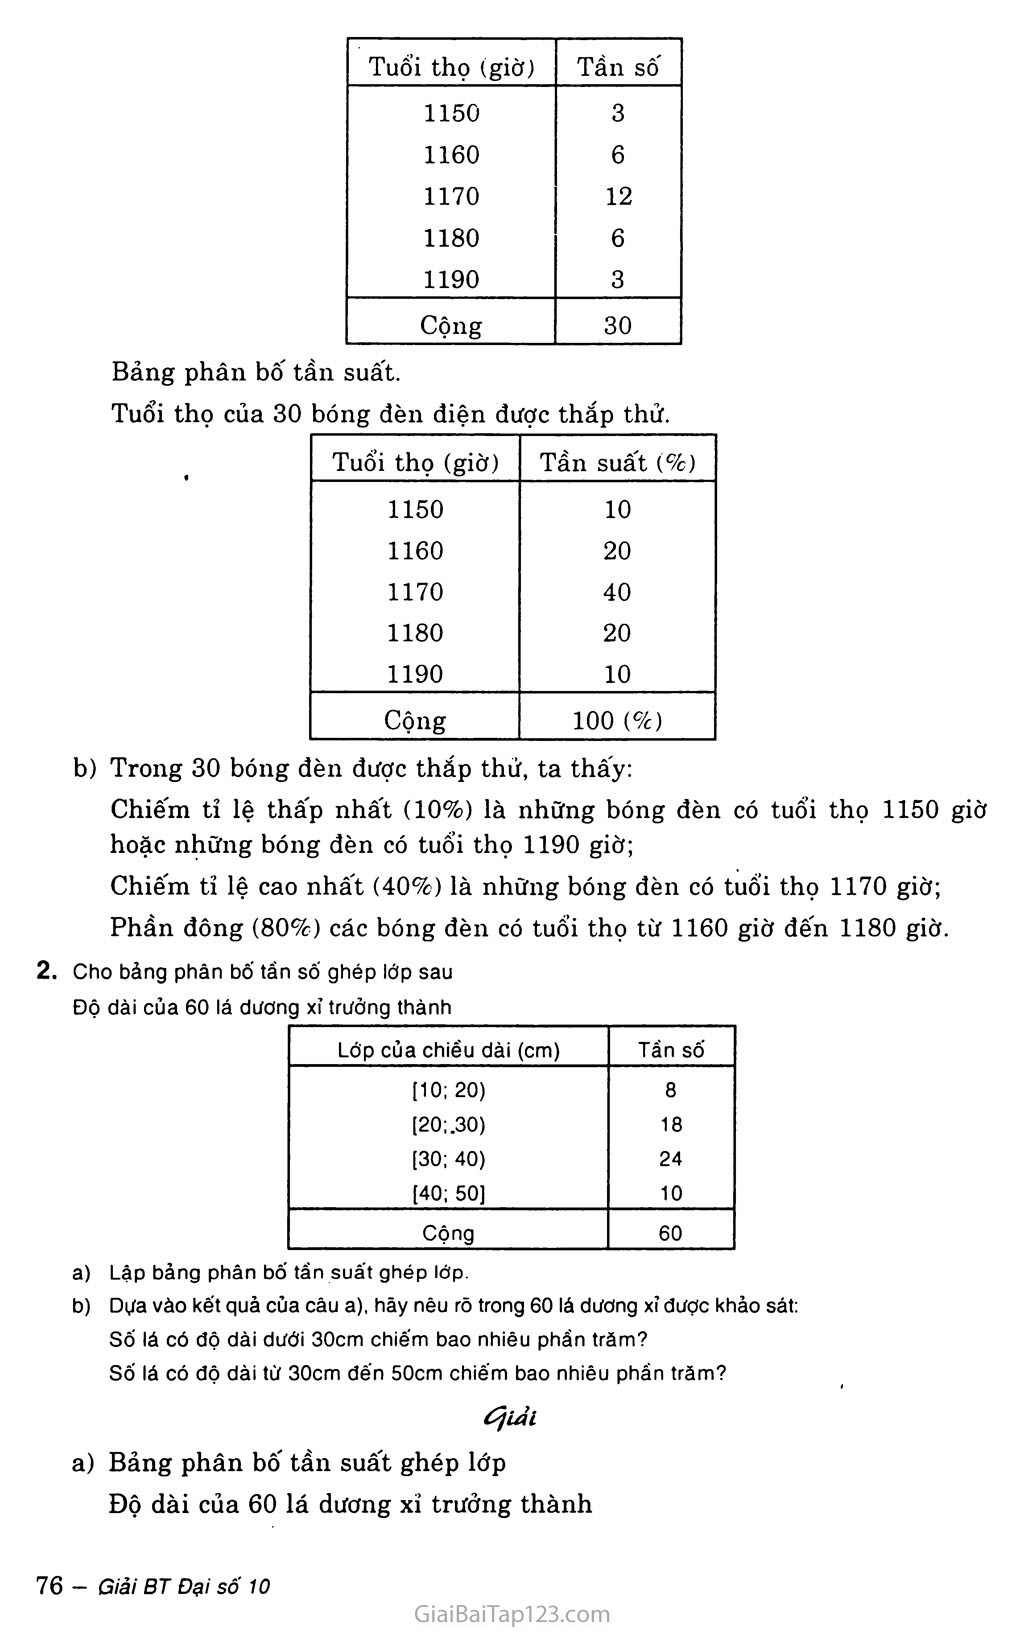 Bài 1. Bảng phân bố tần số và tần suất trang 2